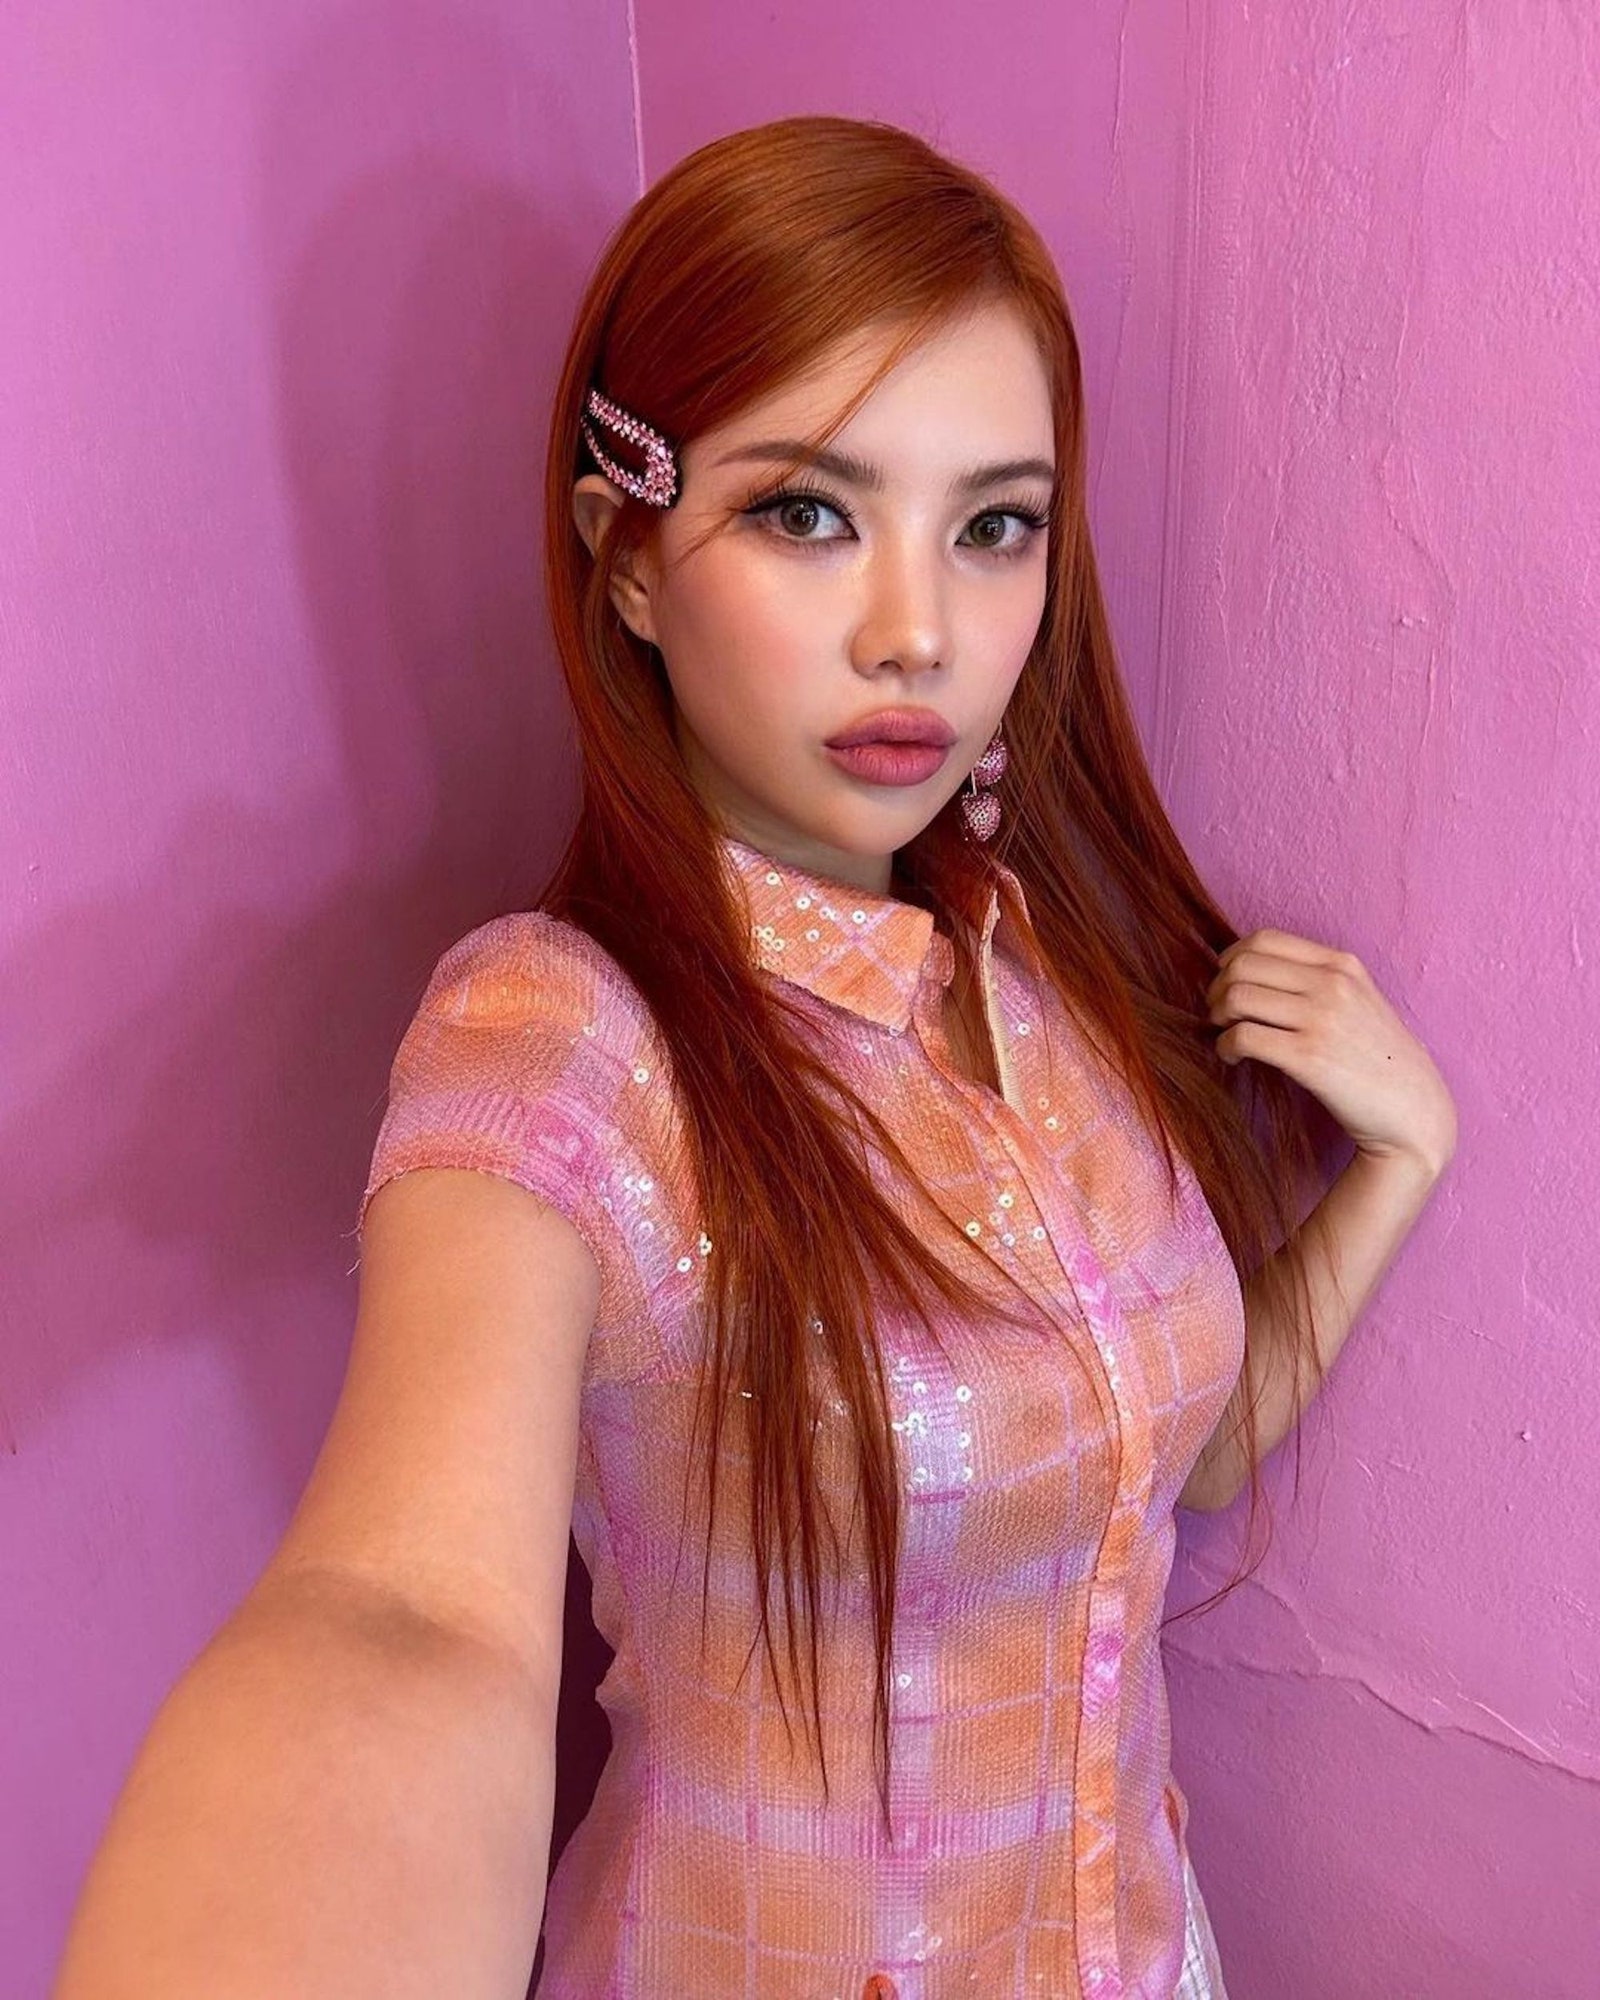 Die koreanische Sängerin Moon Sujin mit glattem orangefarbenem Vintage-Haar und einer glitzernden Haarspange